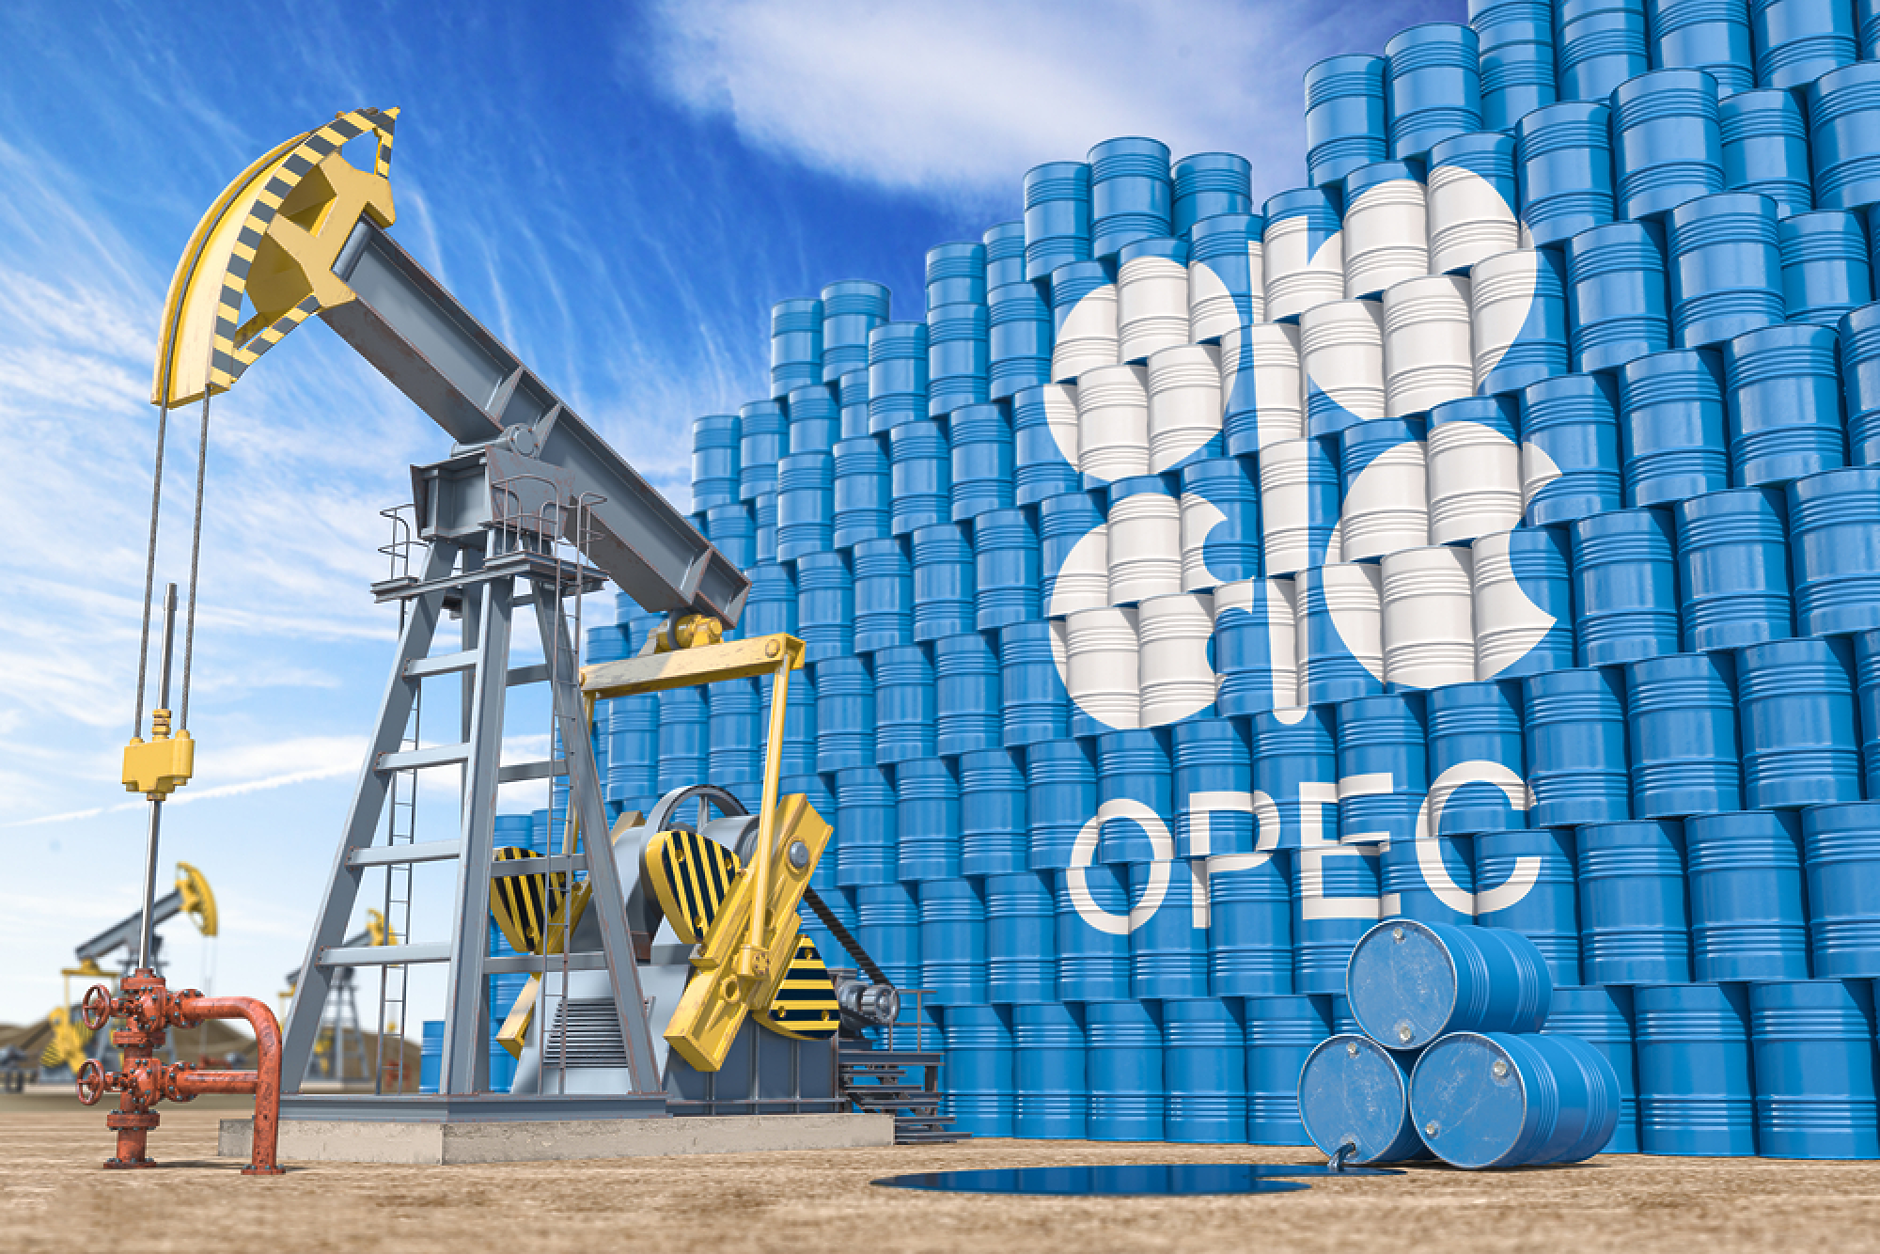 Петролът на ОПЕК поскъпна до 83,03 долара за барел